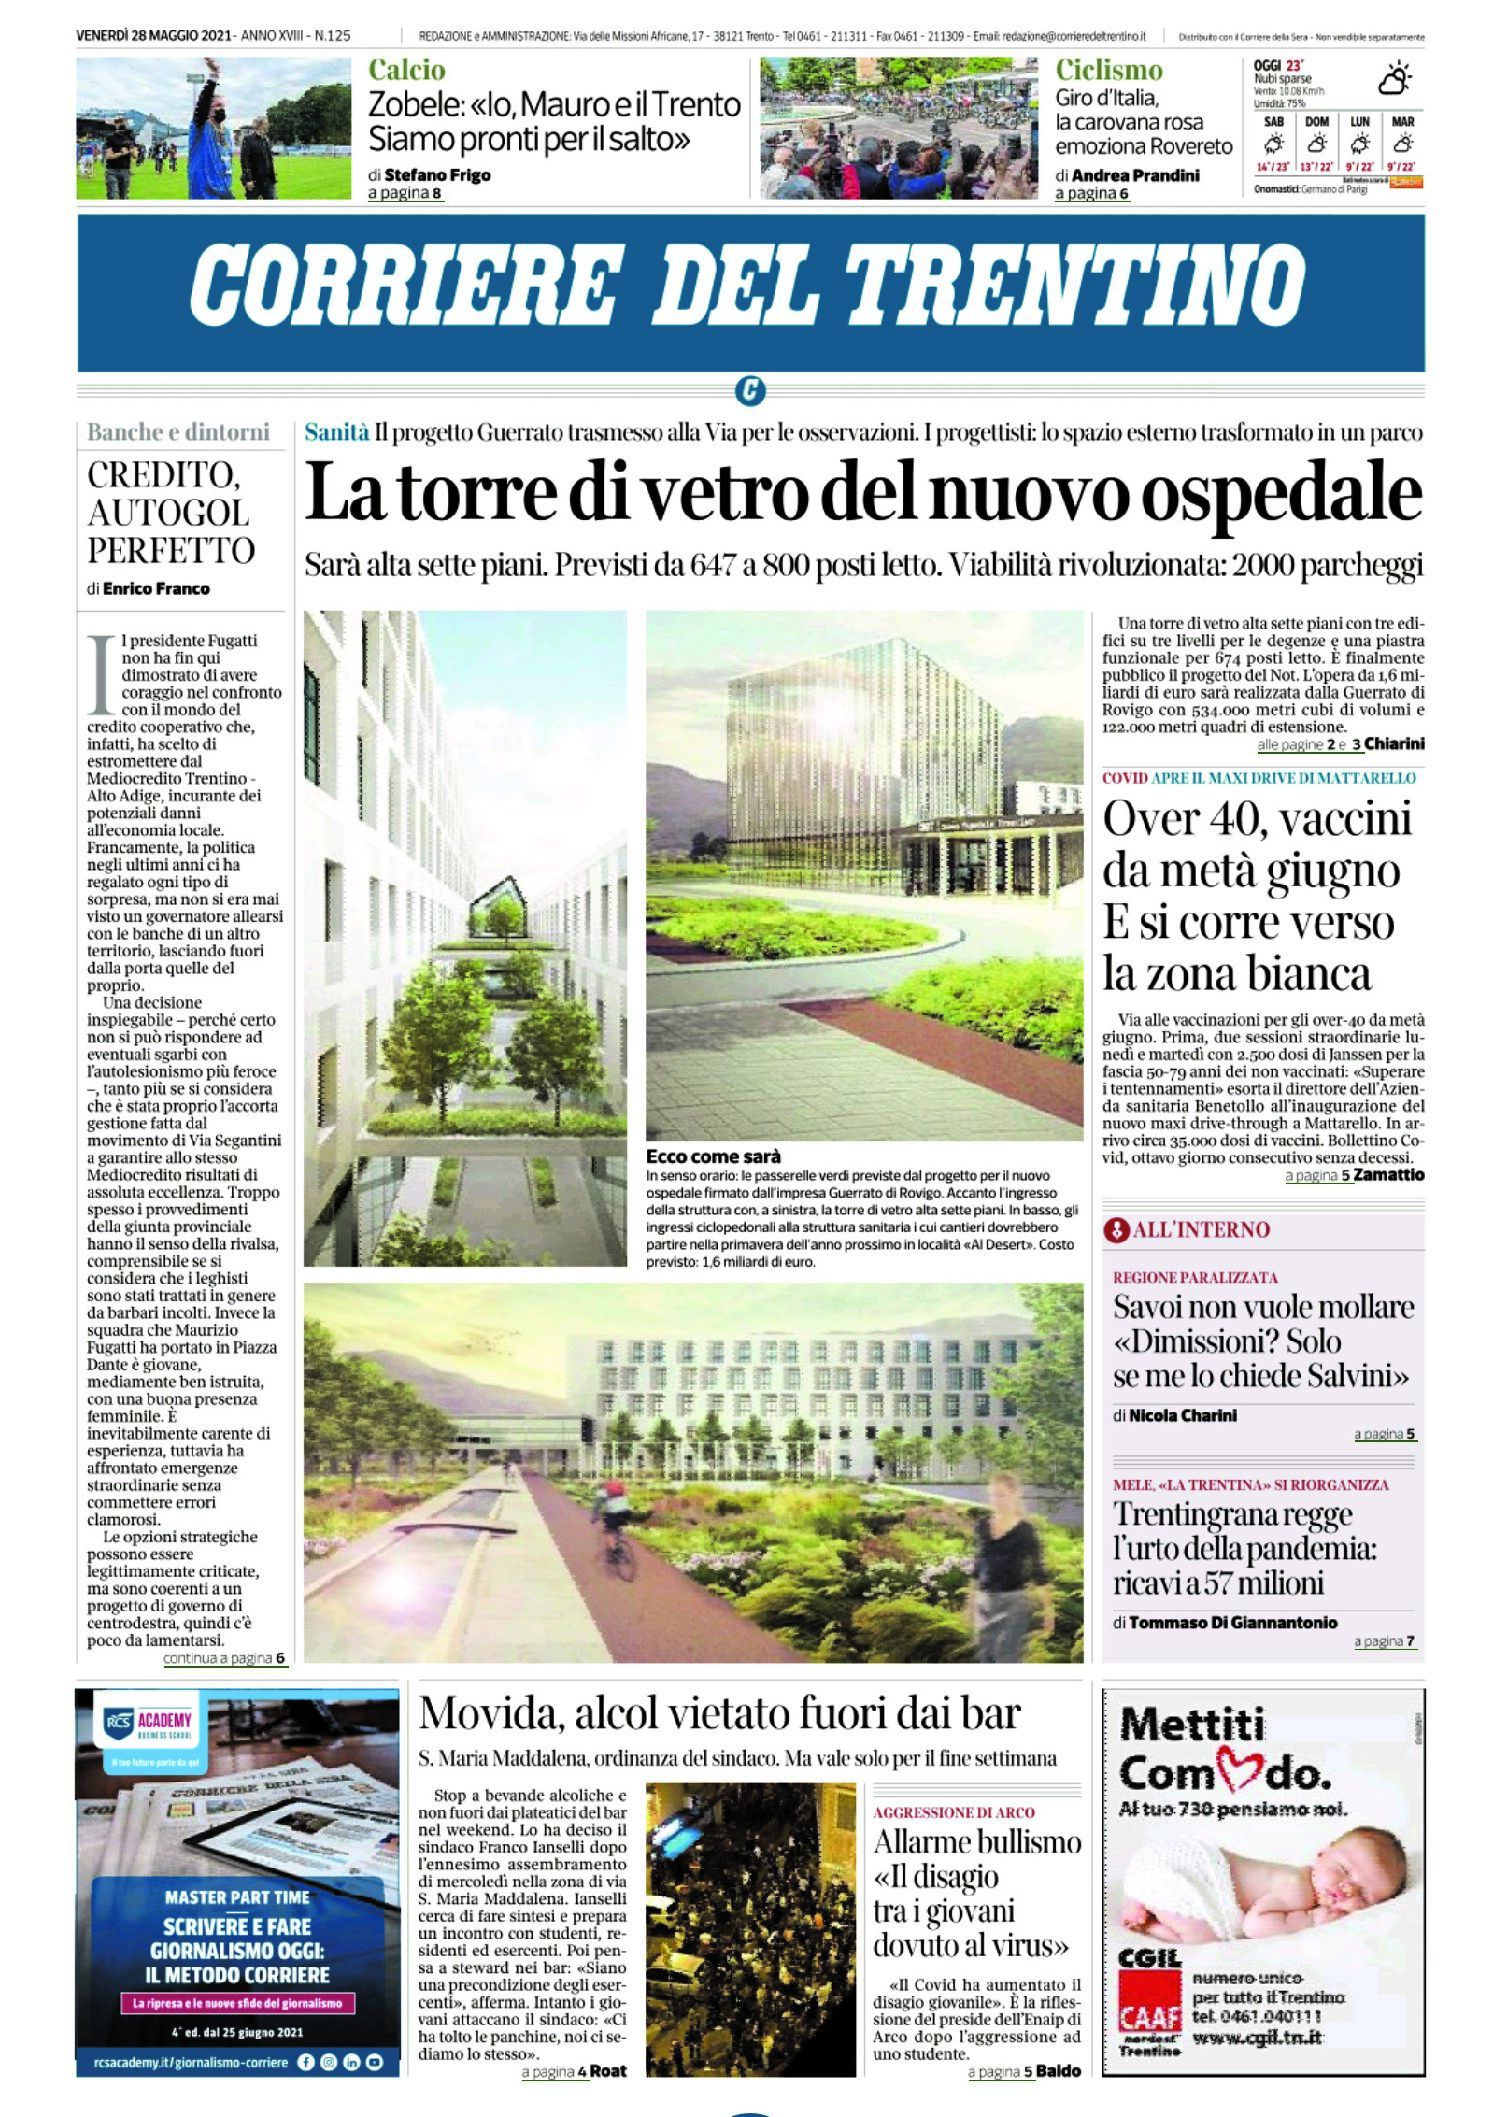 Trento: nuovo ospedale, progetto svelato